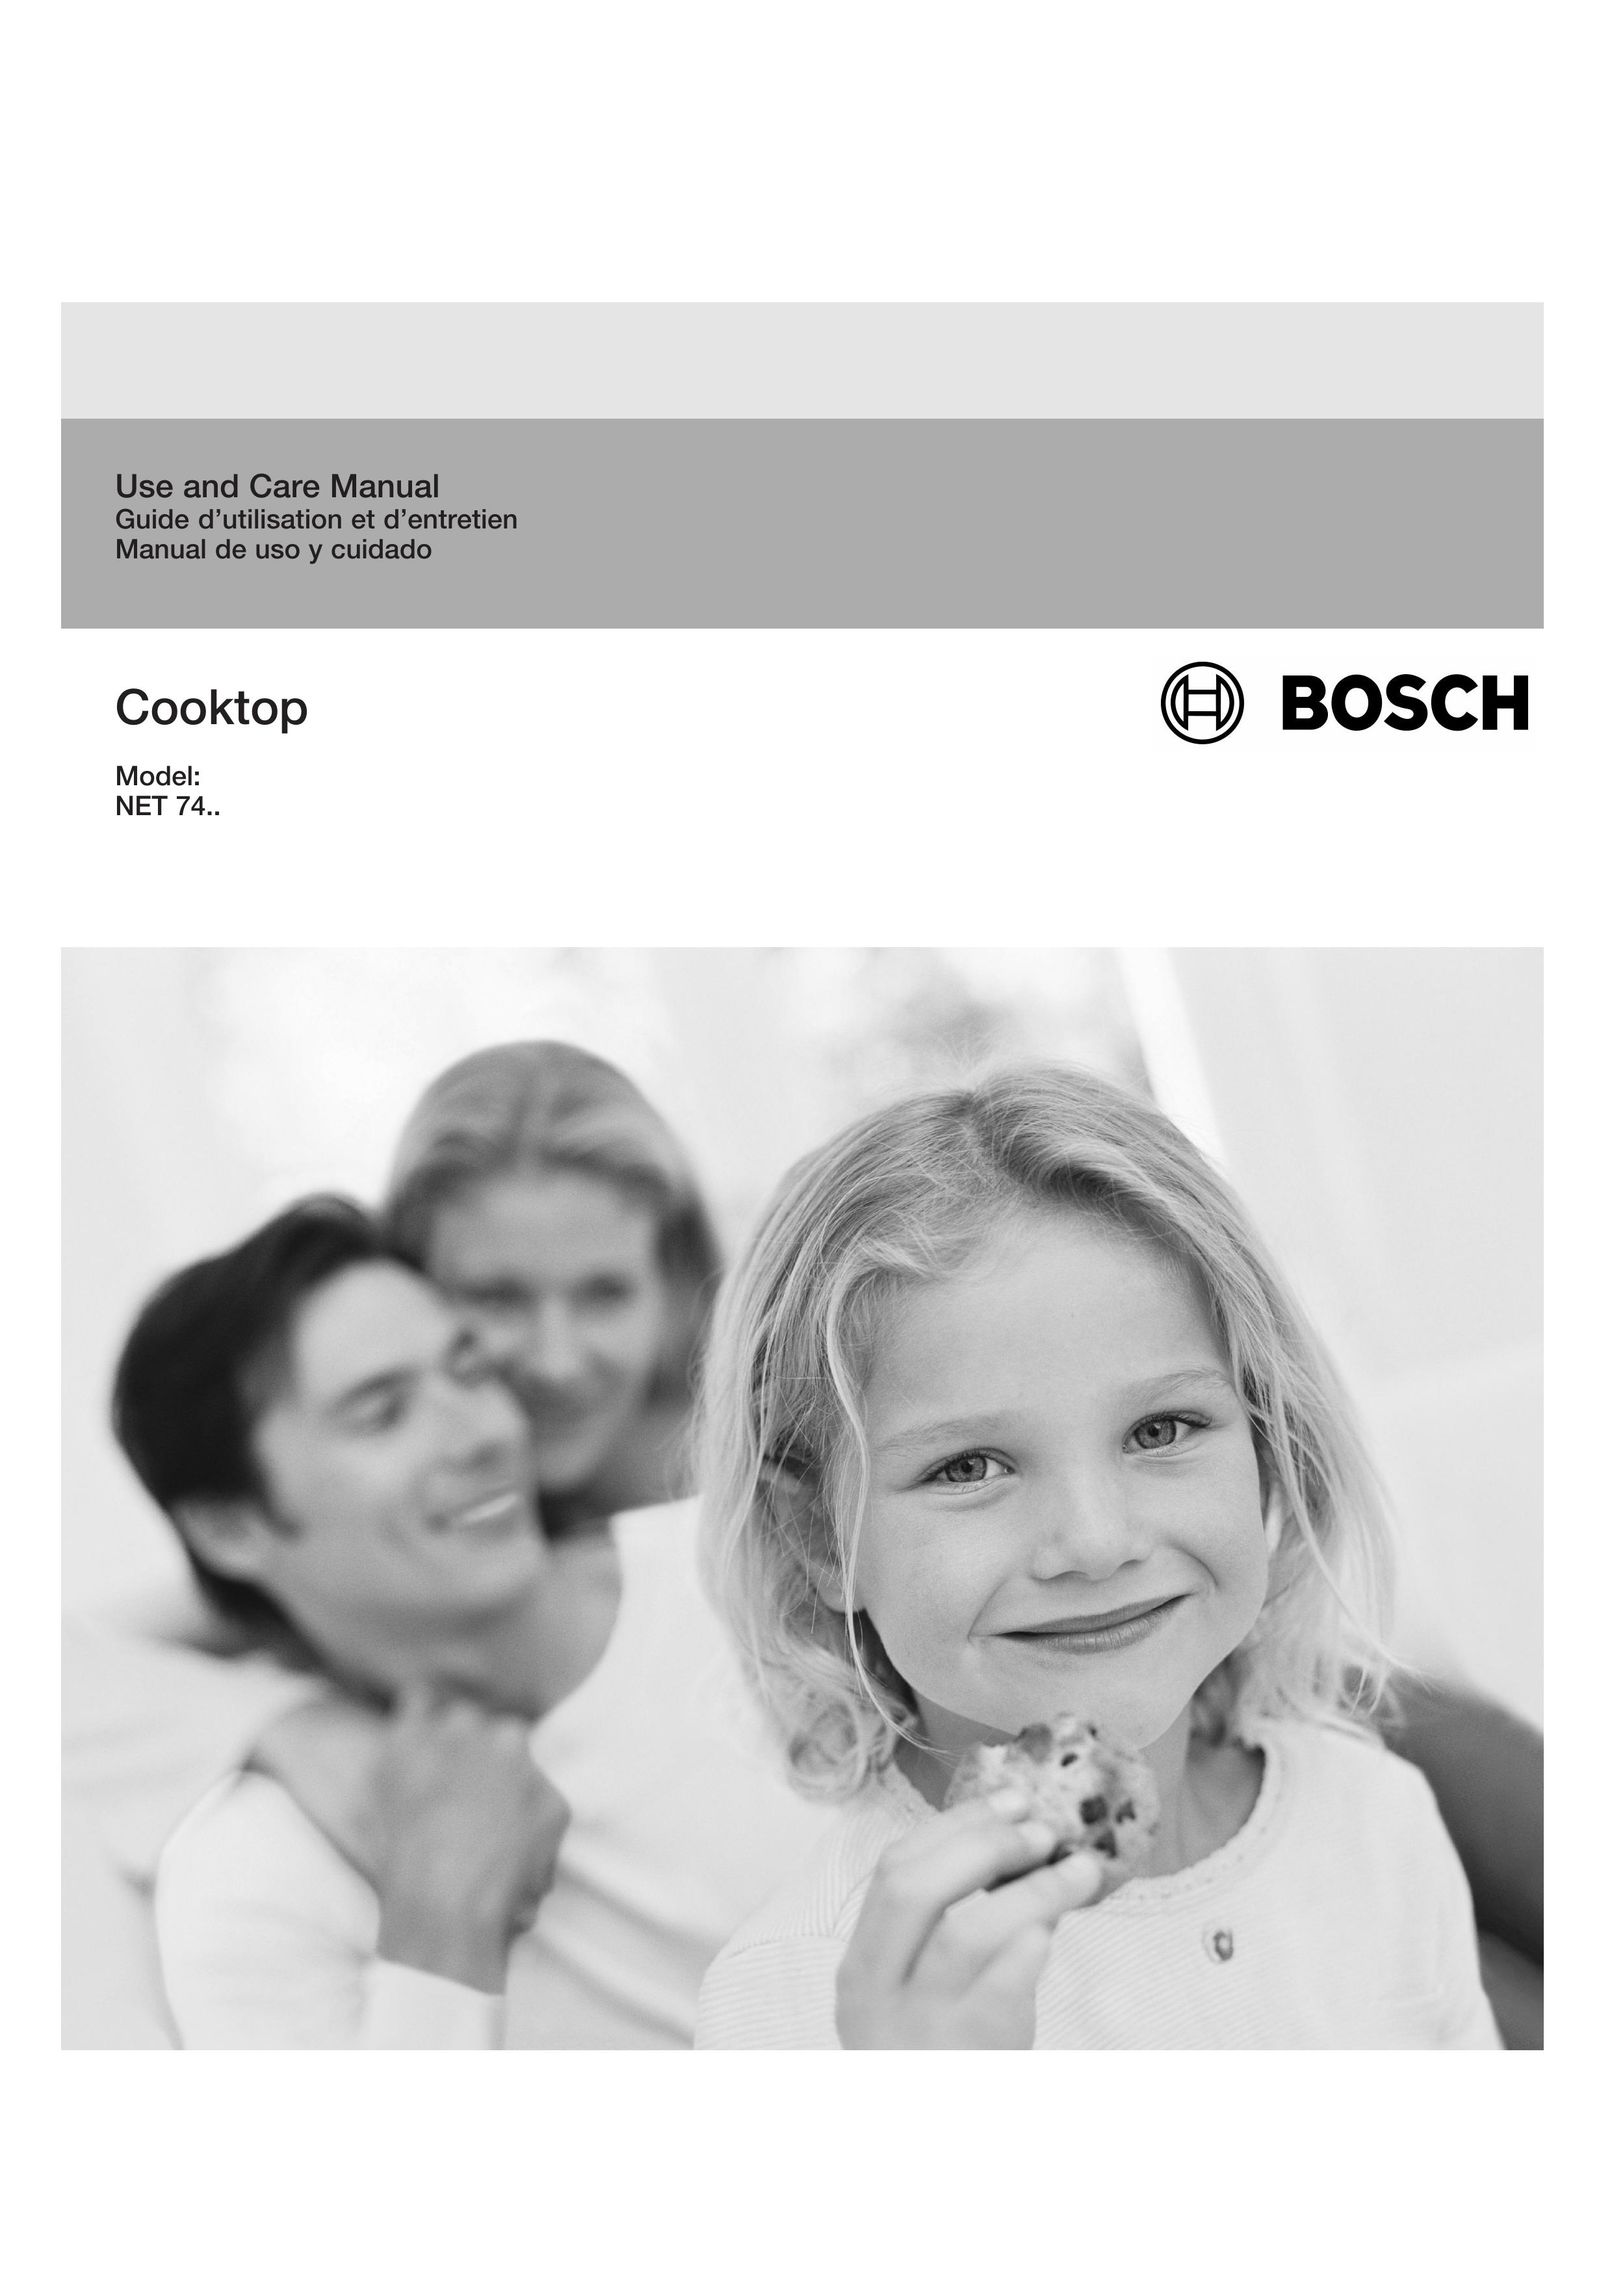 Bosch Appliances ET 74 Cooktop User Manual